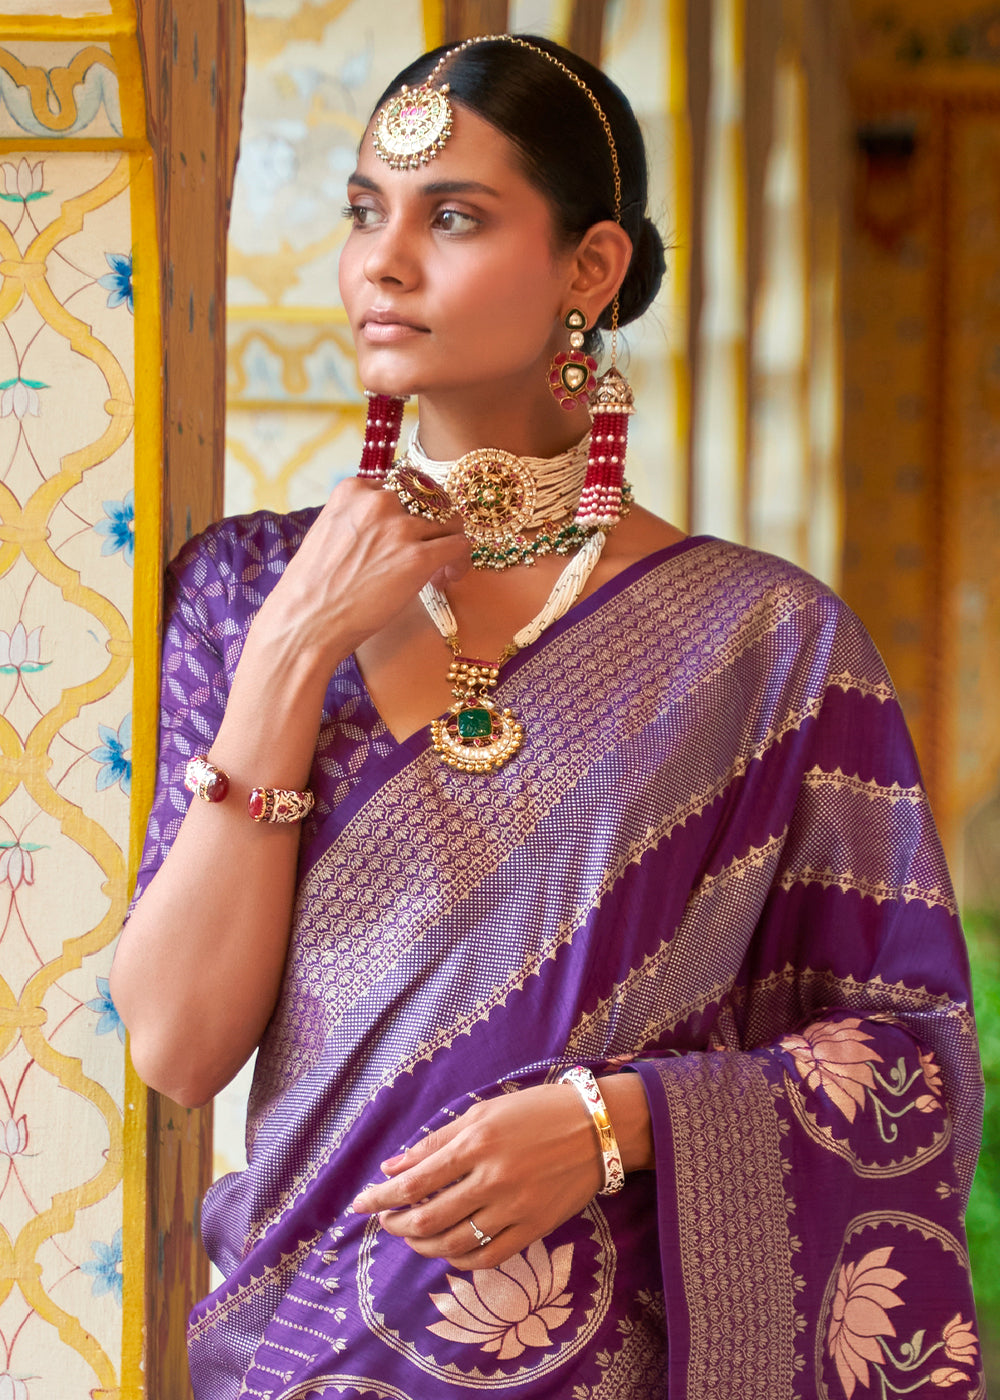 A Majestic Masterpiece  Regal Violet Banarasi Silk Saree